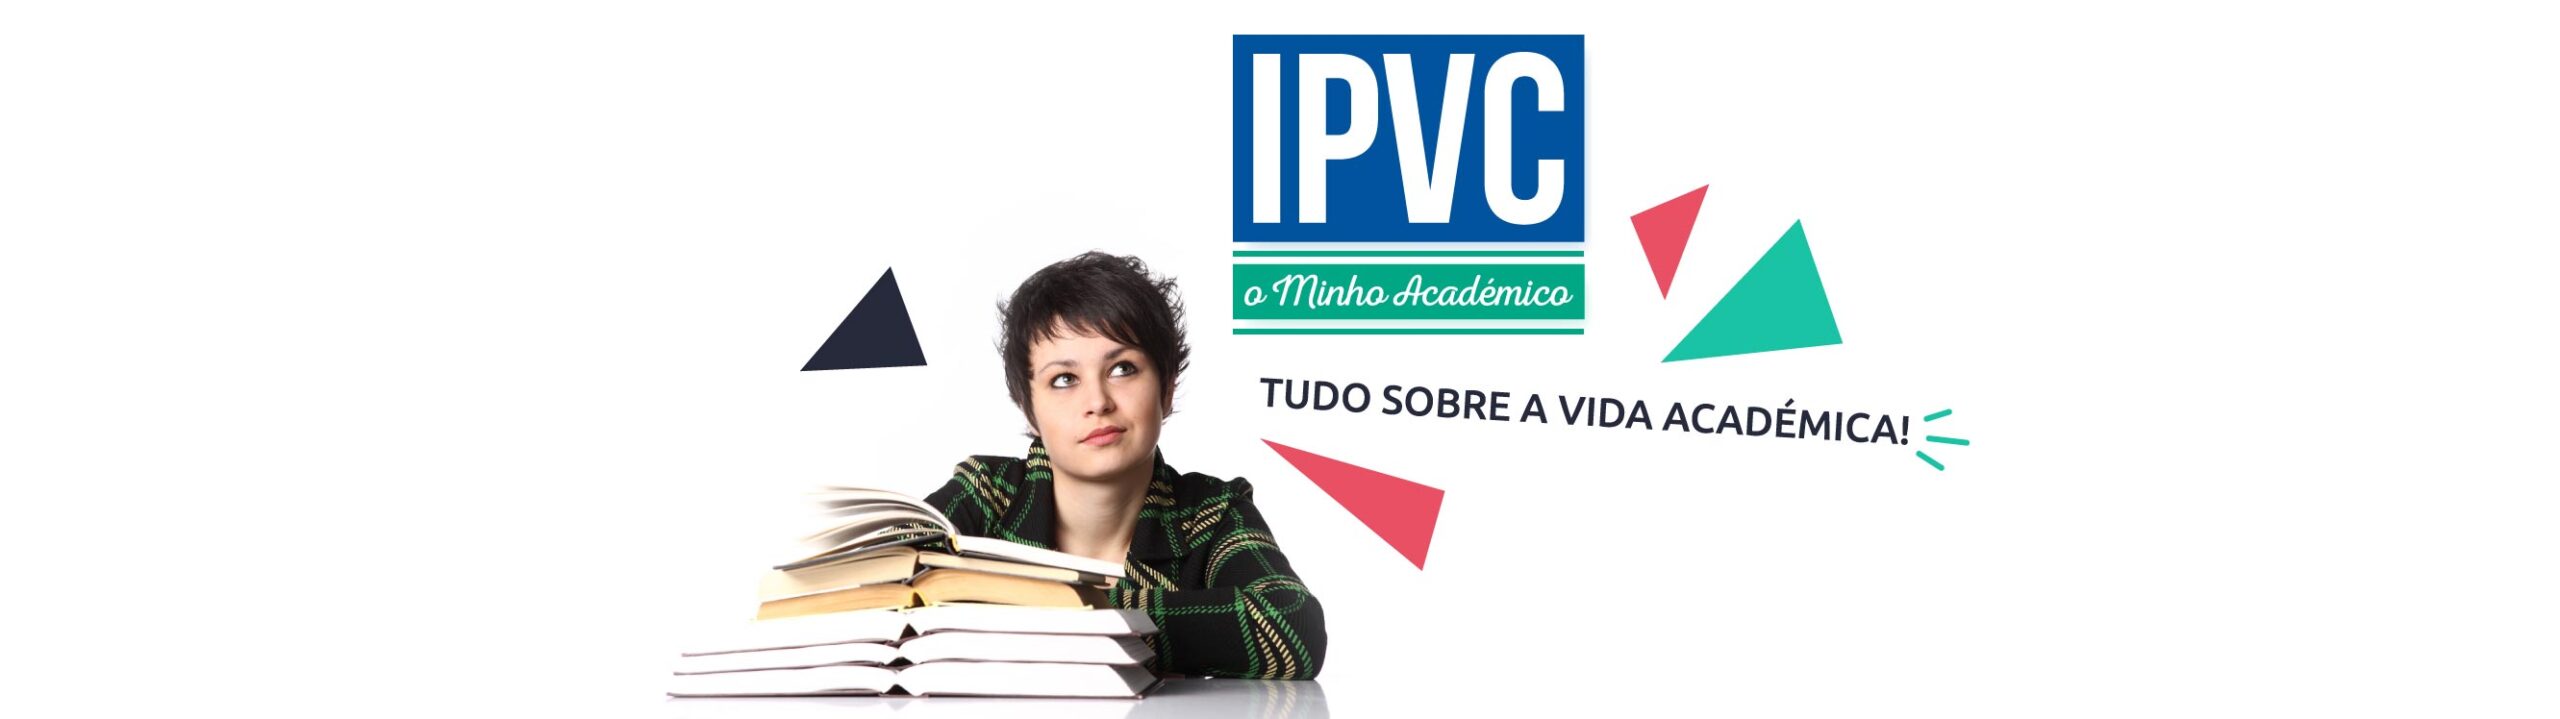 IPVC – O Minho Académico (Ed. 036)